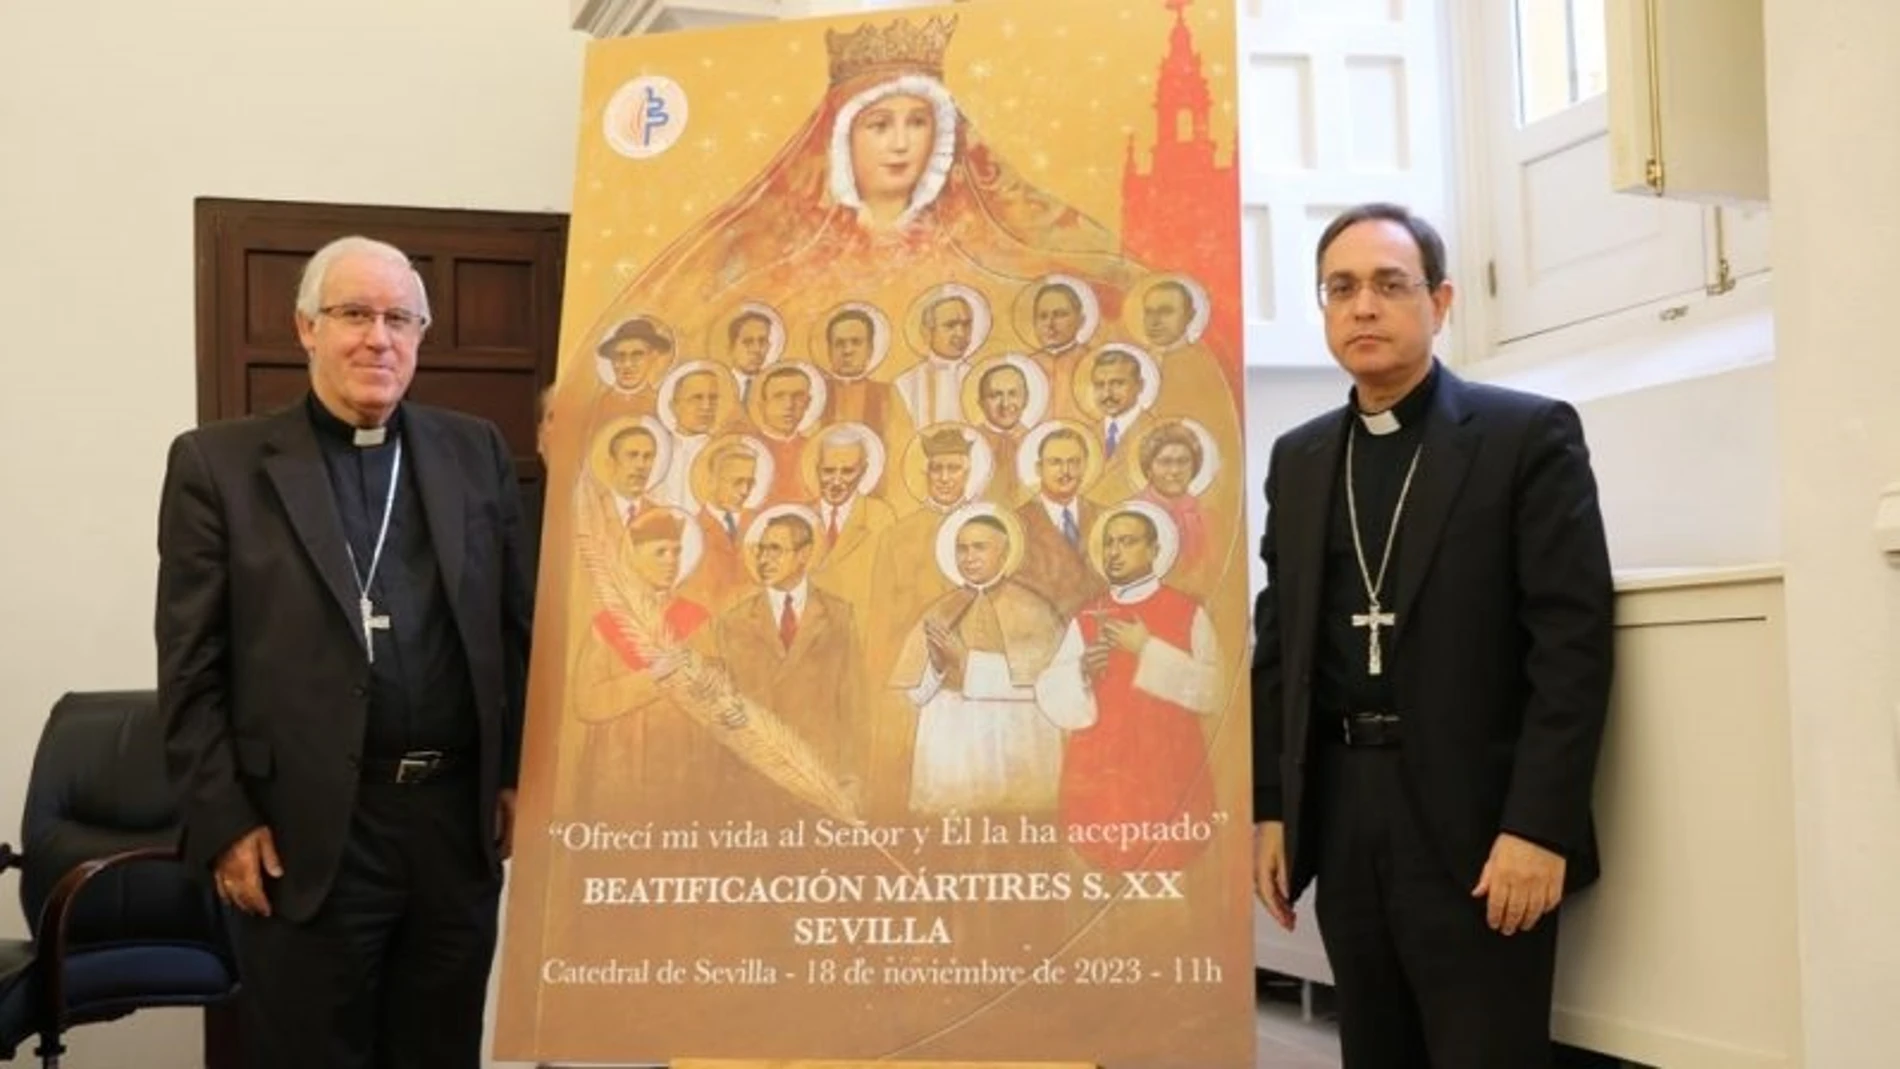 El arzobispo de Sevilla, José Ángel Saiz Meneses, a la izquierda, en la presentación del cartel de la beatificación de 20 mártires sevillanos.ARZOBISPADO DE SEVILLA23/10/2023